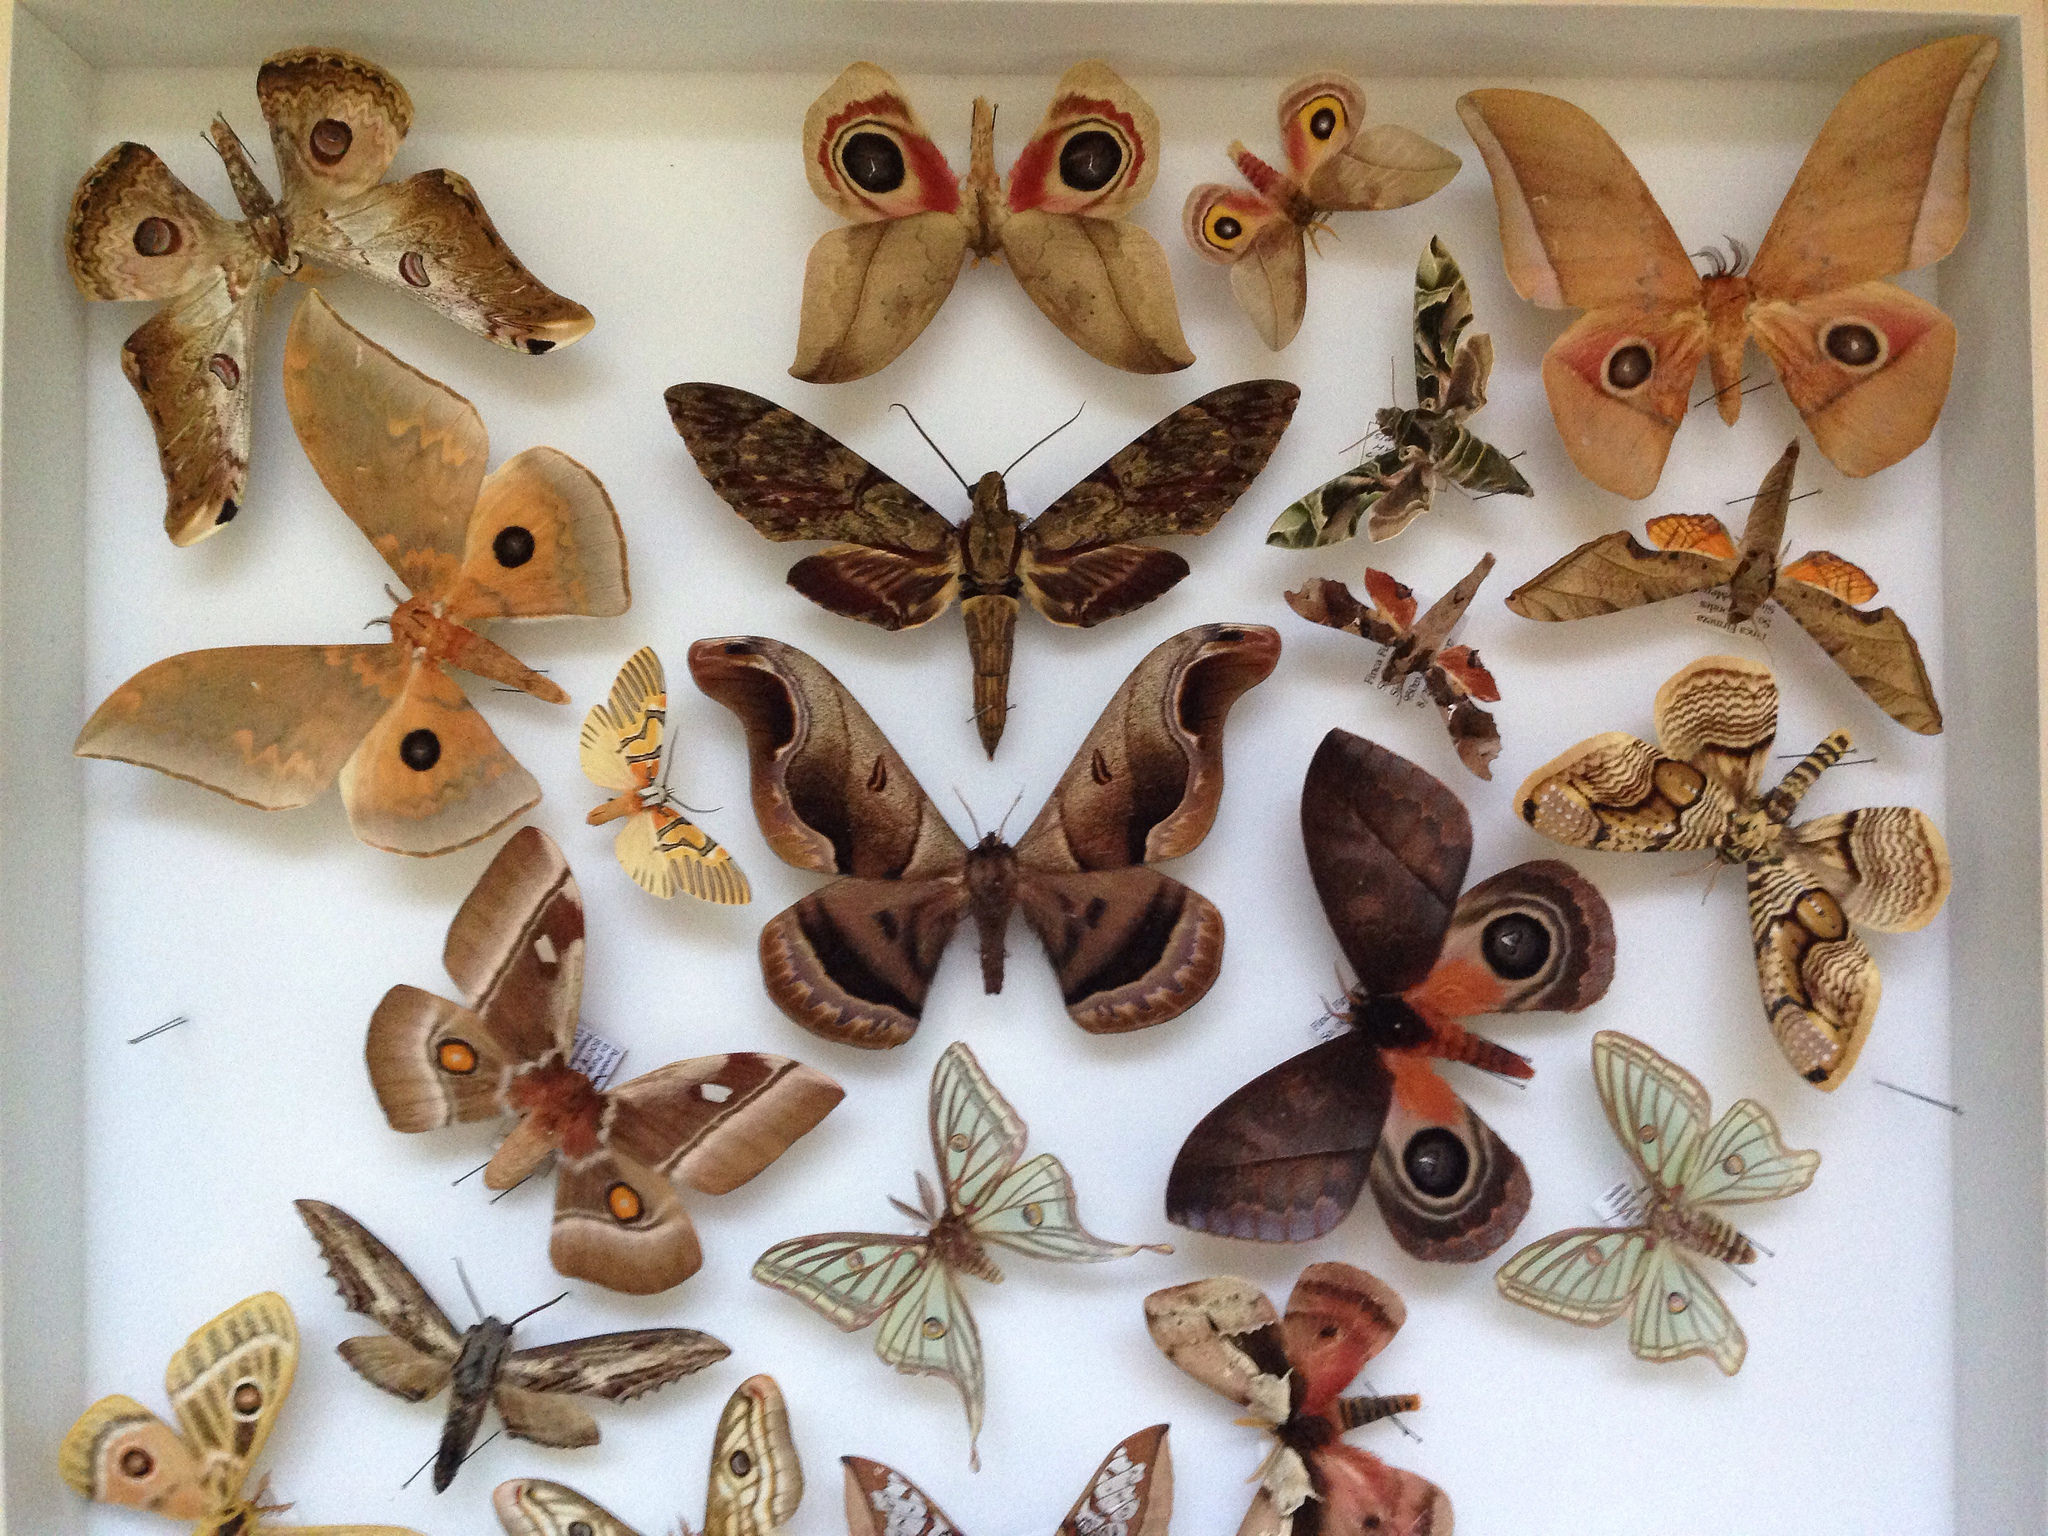 Schmetterlinge-Sammlung, Foto (C) Justin Sewell / flickr